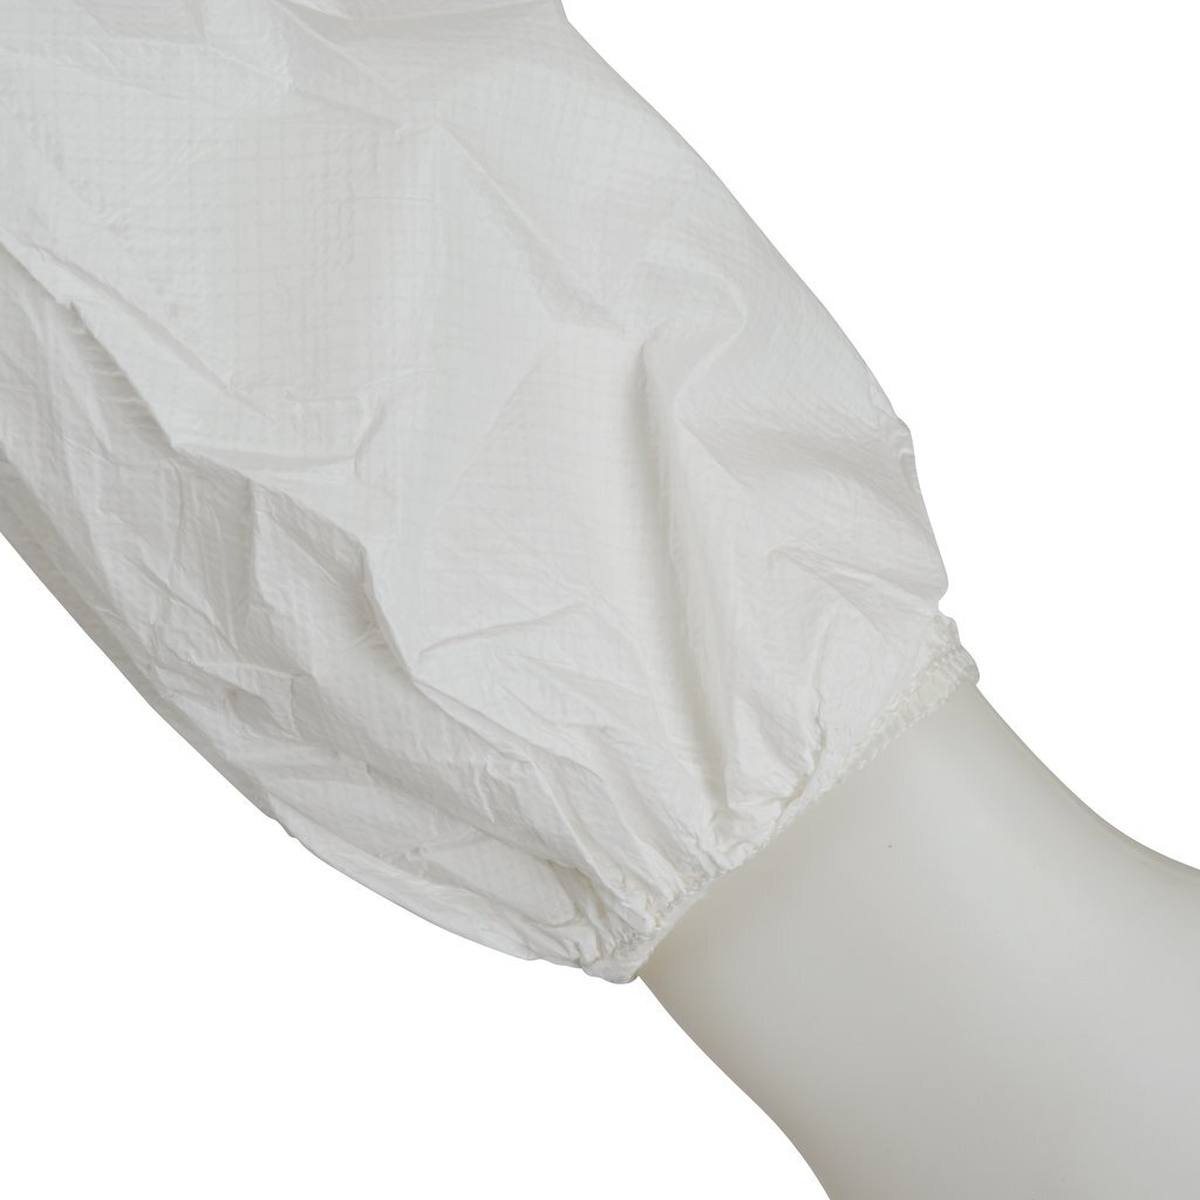 Tuta 3M 4510, bianca, TIPO 5/6, taglia XL, materiale laminato PE microporoso, polsini elasticizzati